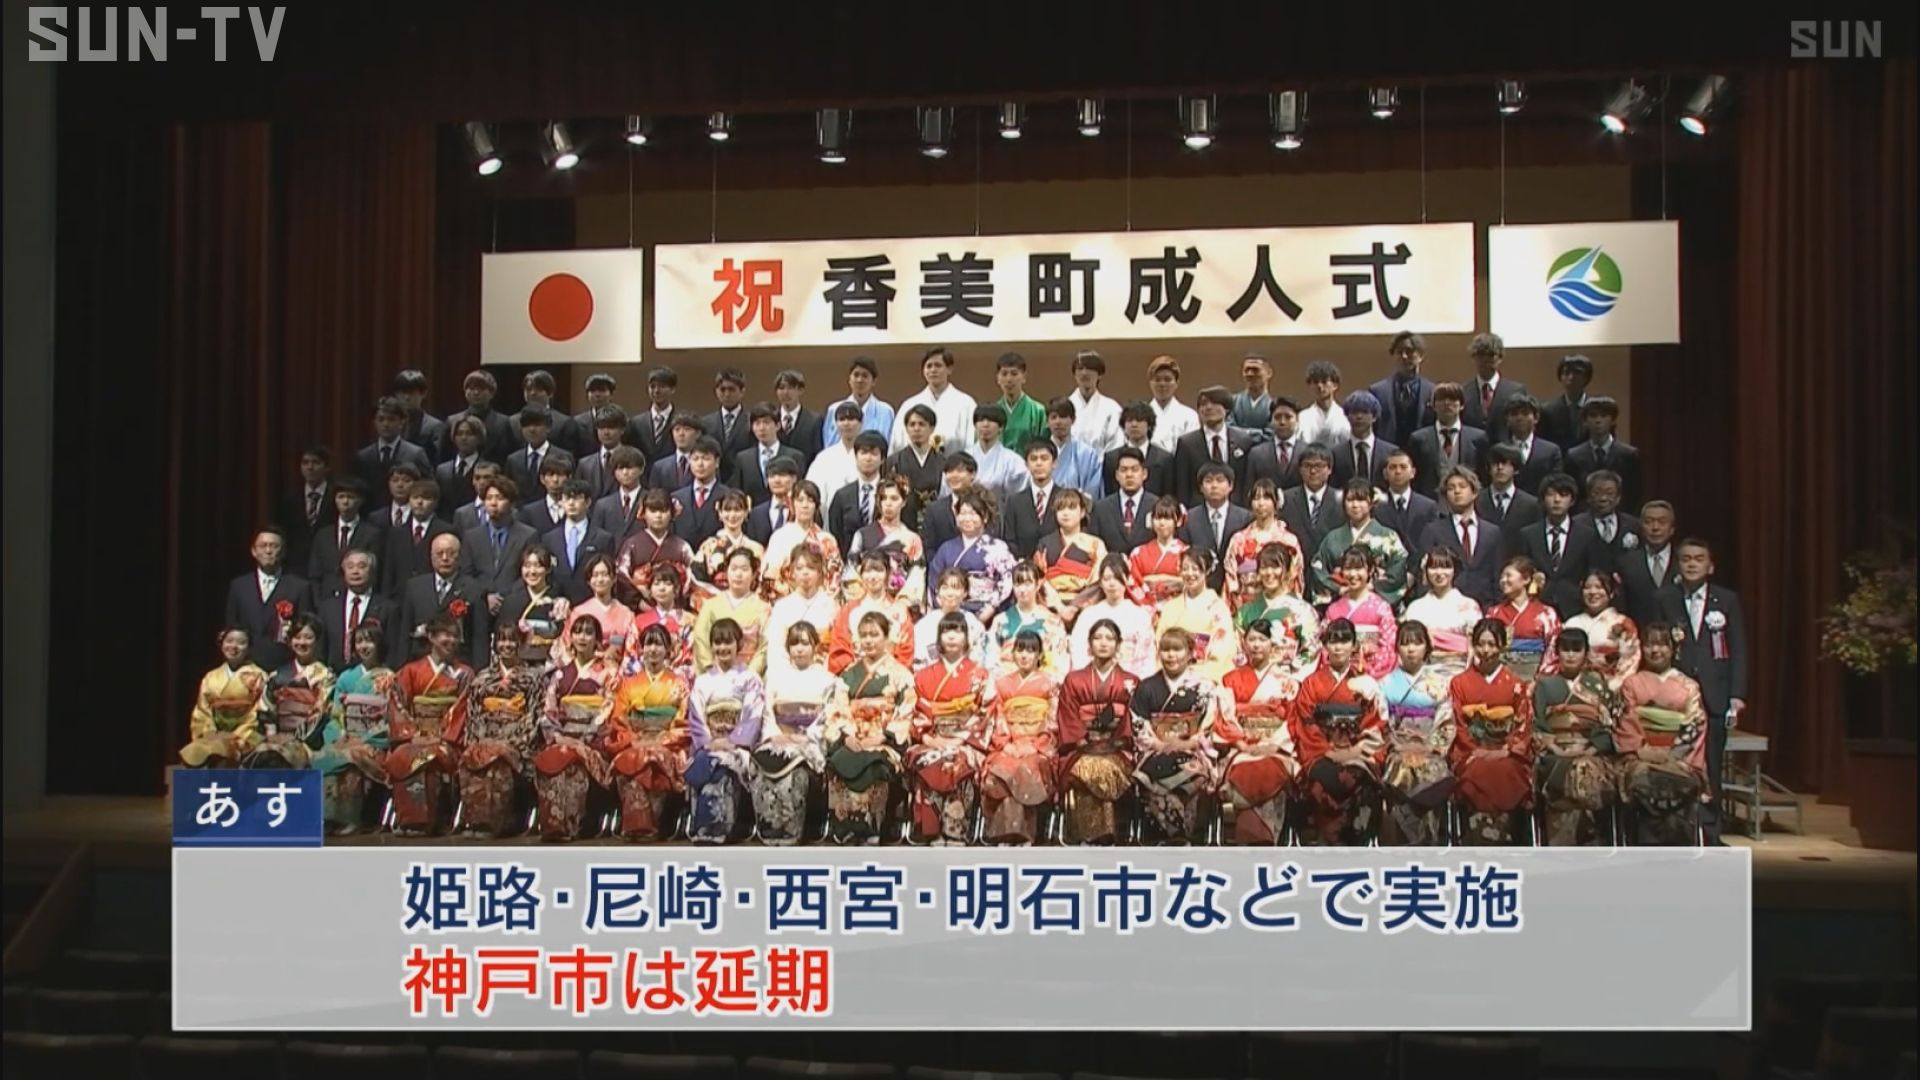 1月11日は 成人の日 兵庫県香美町で成人式 サンテレビニュース